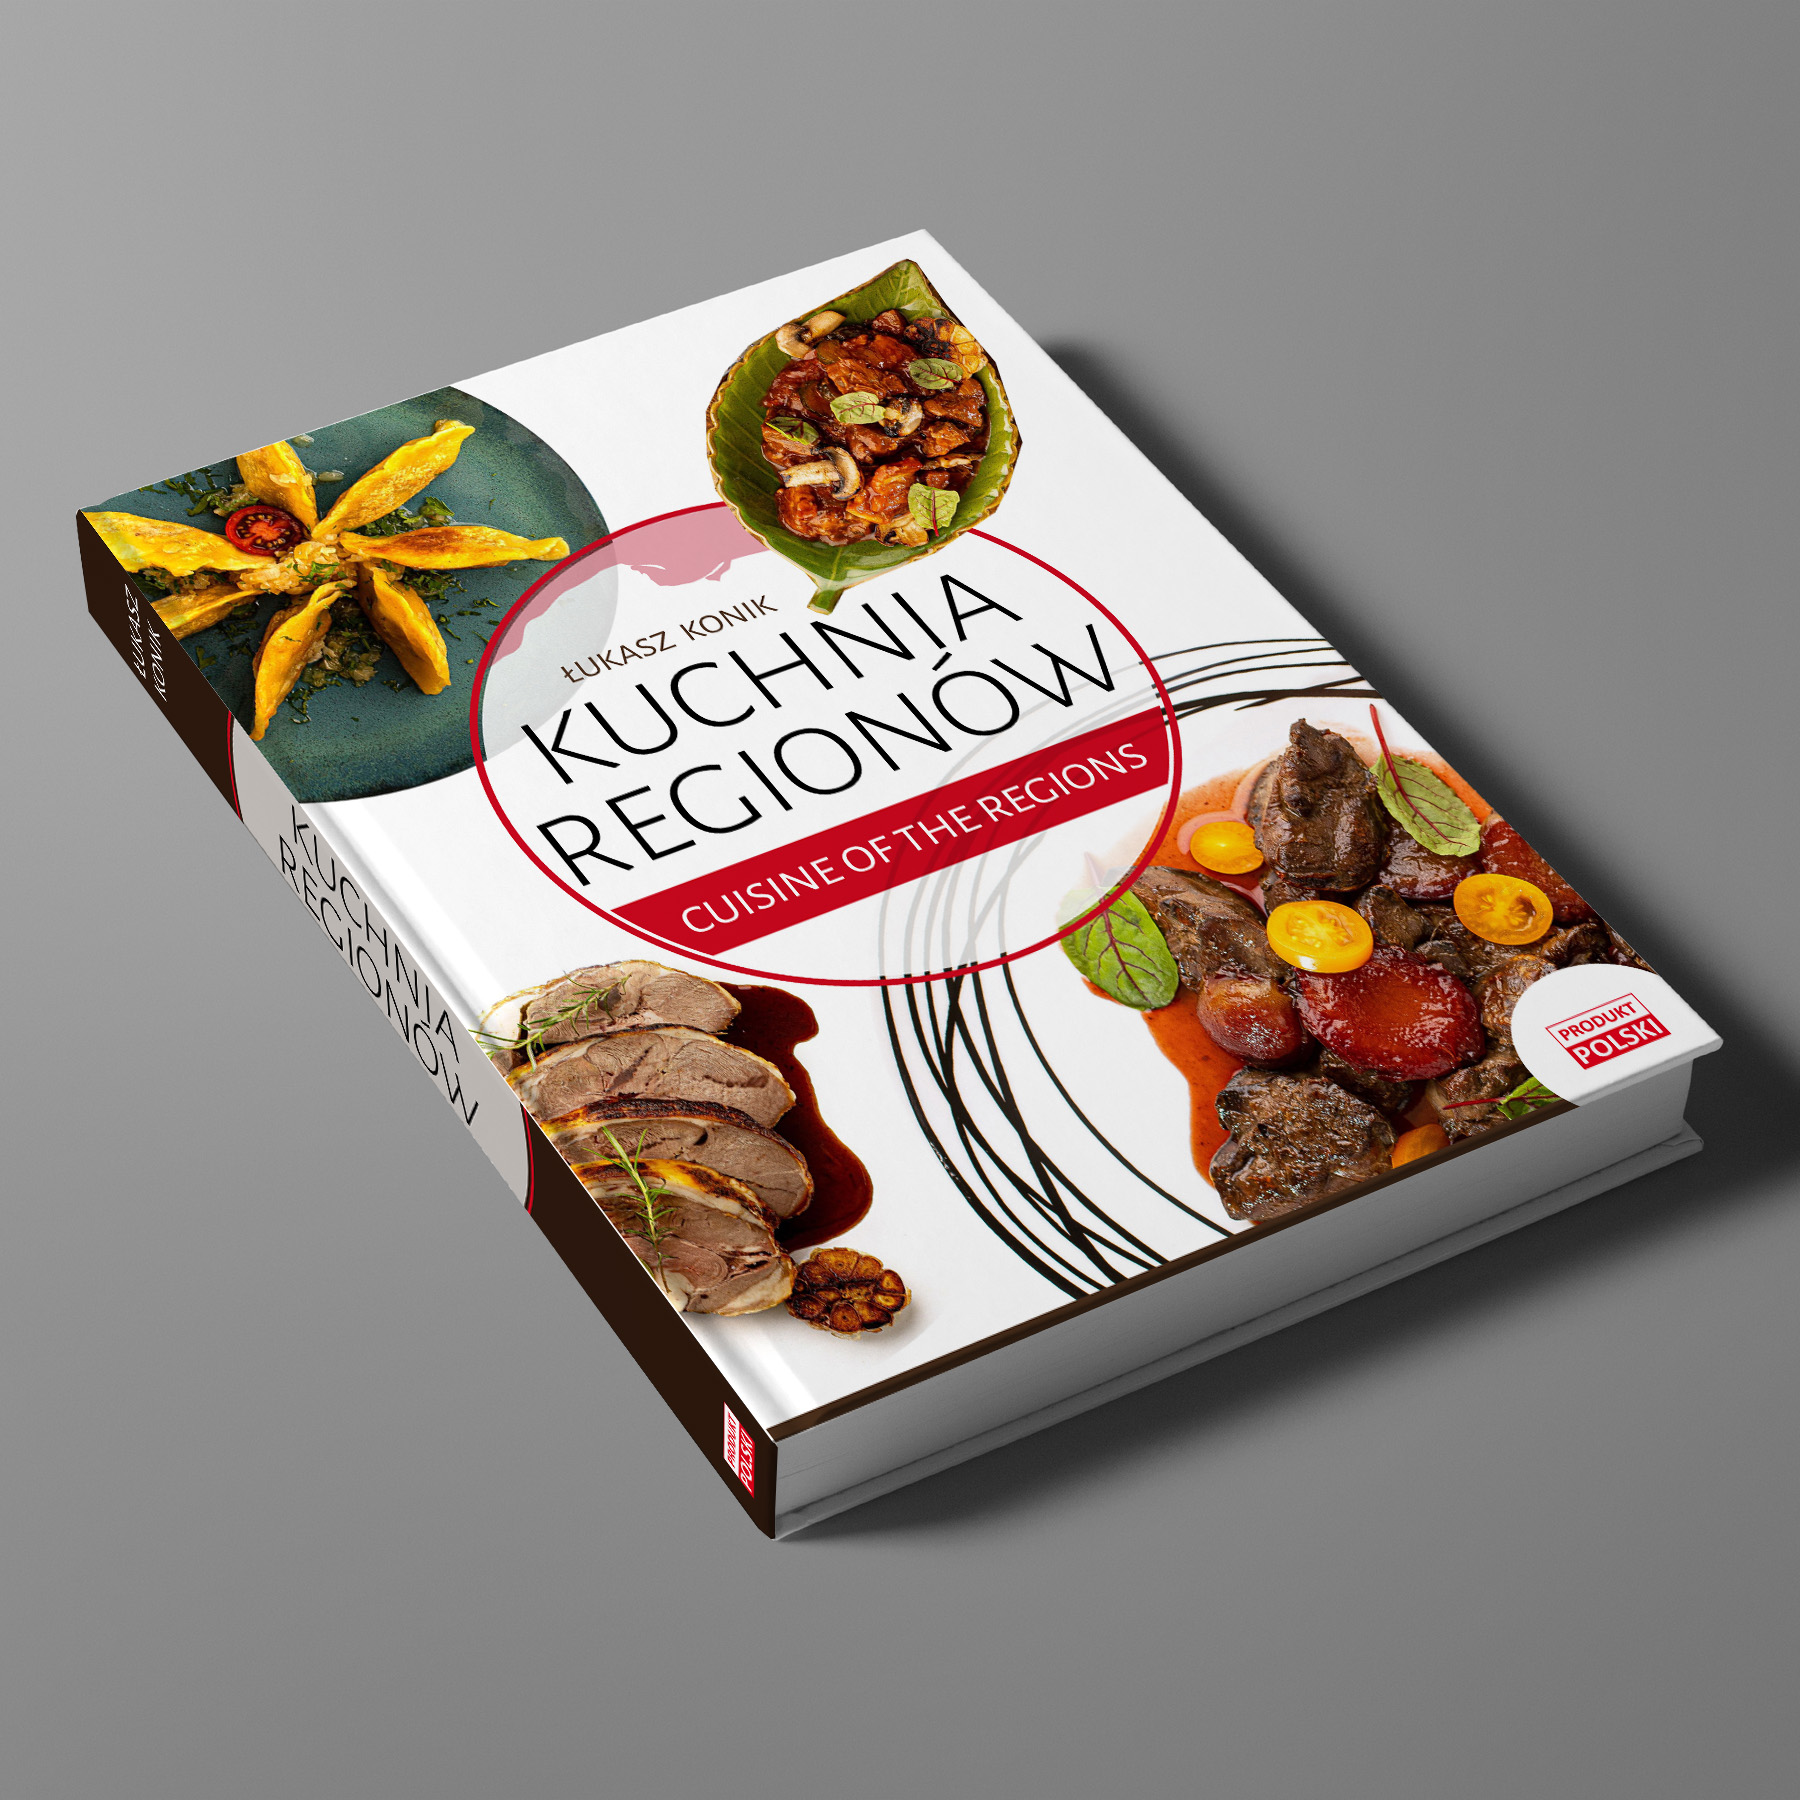 Kuchnia regionów – 160 przepisów ze wszystkich regionów Polski